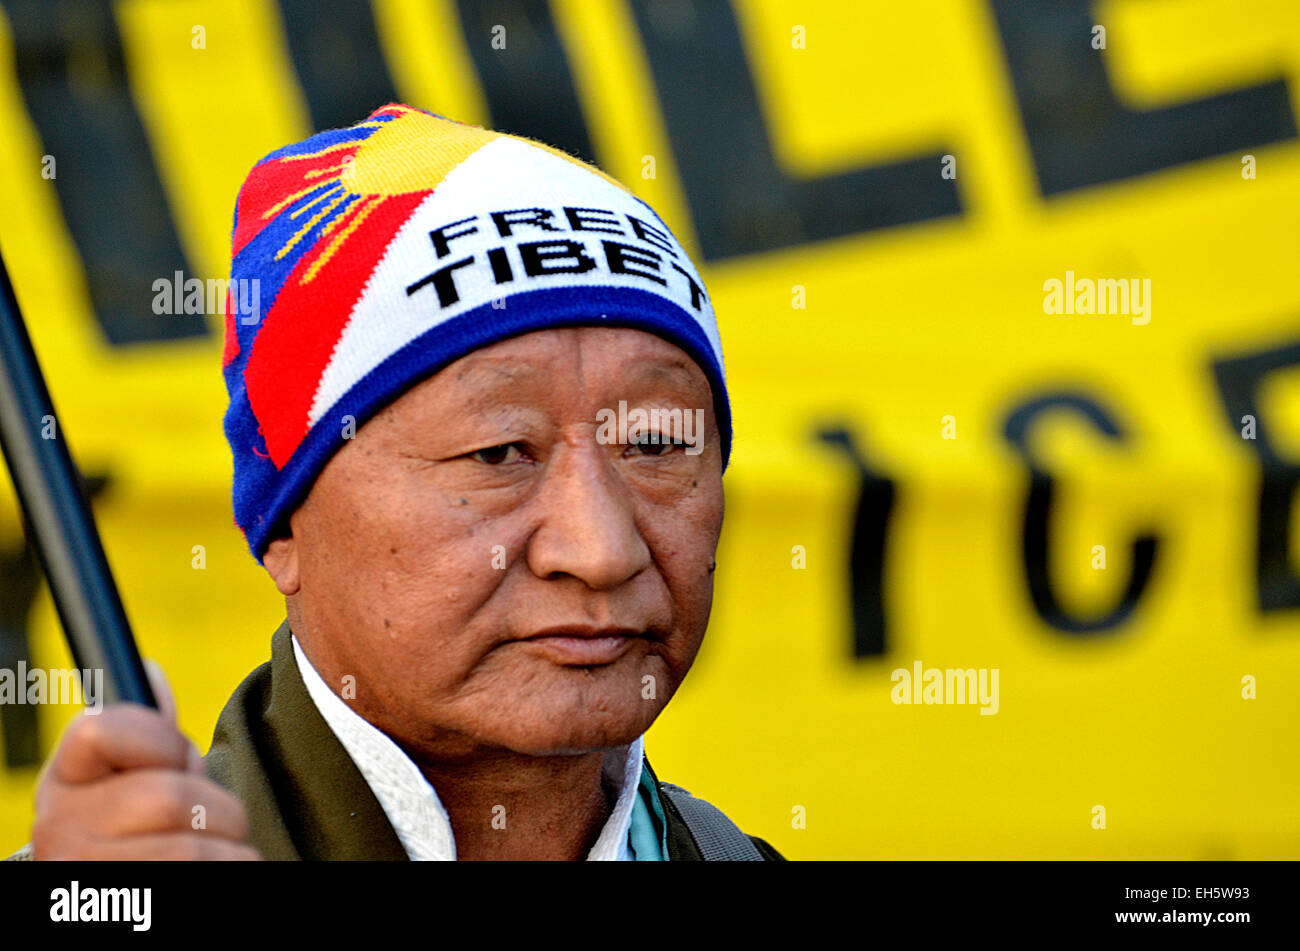 London, 7. März. Protestmarsch von Downing Street bis zur chinesischen Botschaft China gefordert, ihre Besetzung und die Menschenrechtsverletzungen in Tibet Kredit zu stoppen: PjrNews/Alamy Live News Stockfoto